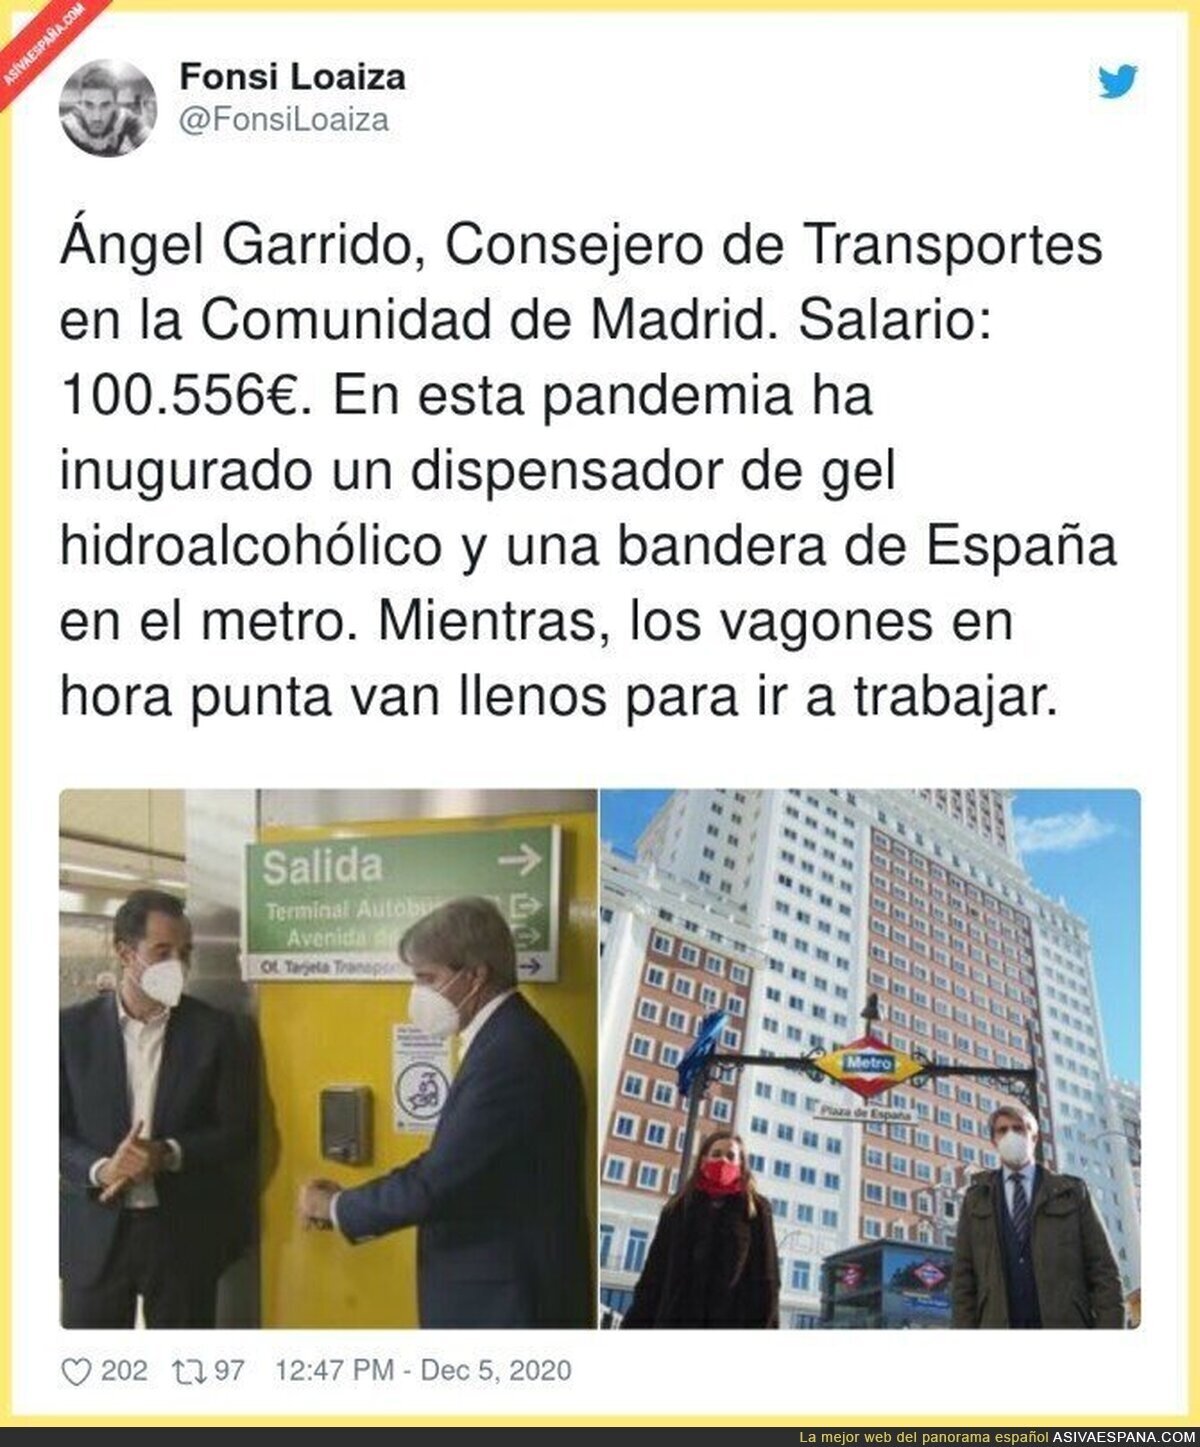 Menudo añito lleva Ángel Garrido